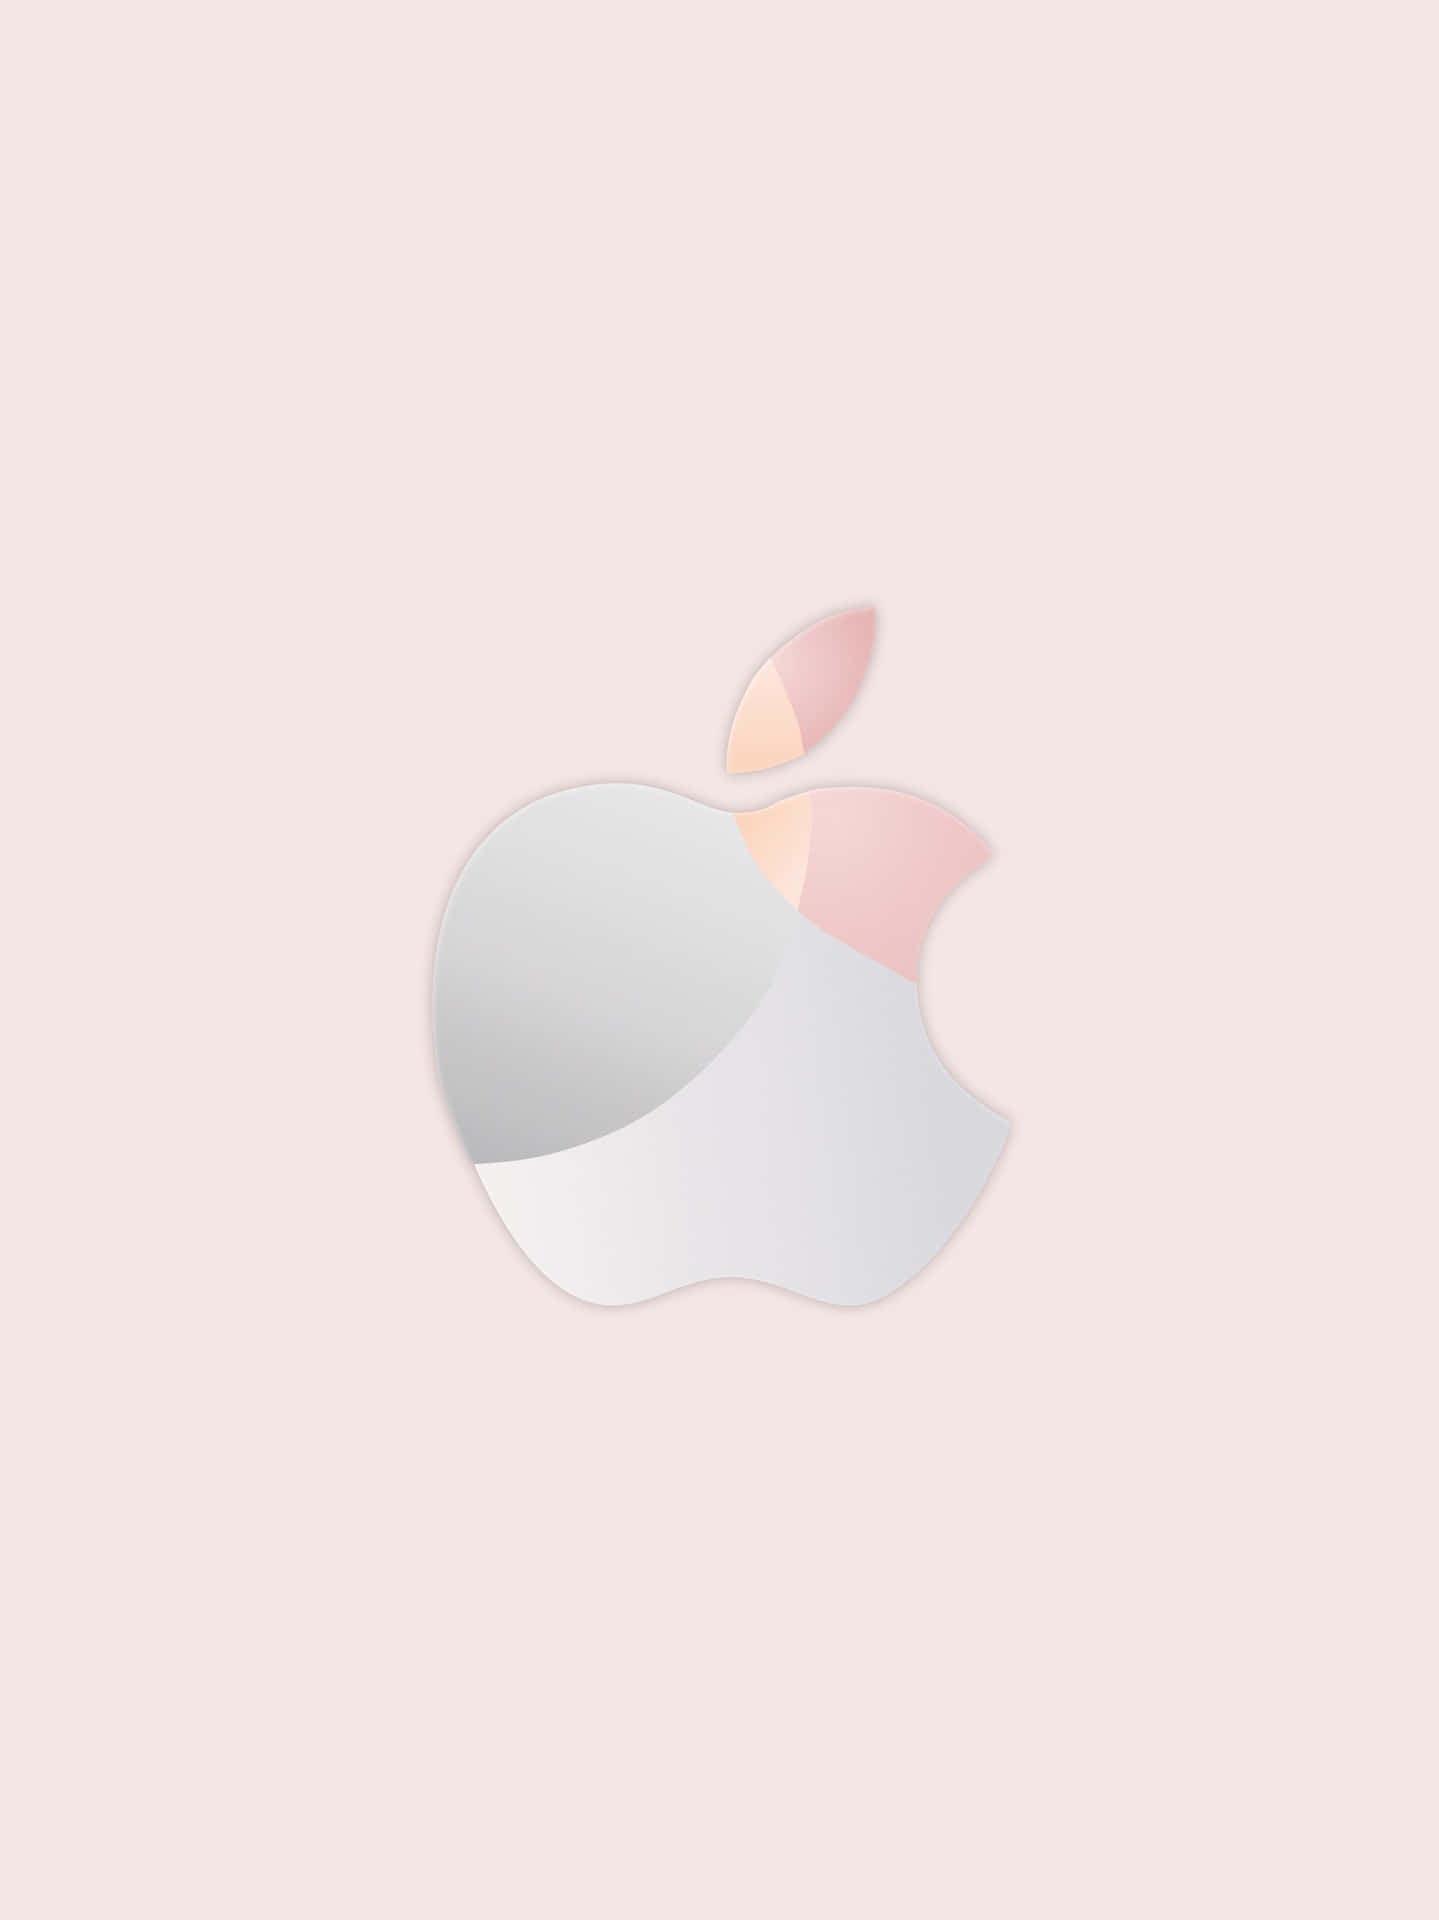 Skinne Sølv Logo Rose Guld Apple Wallpaper